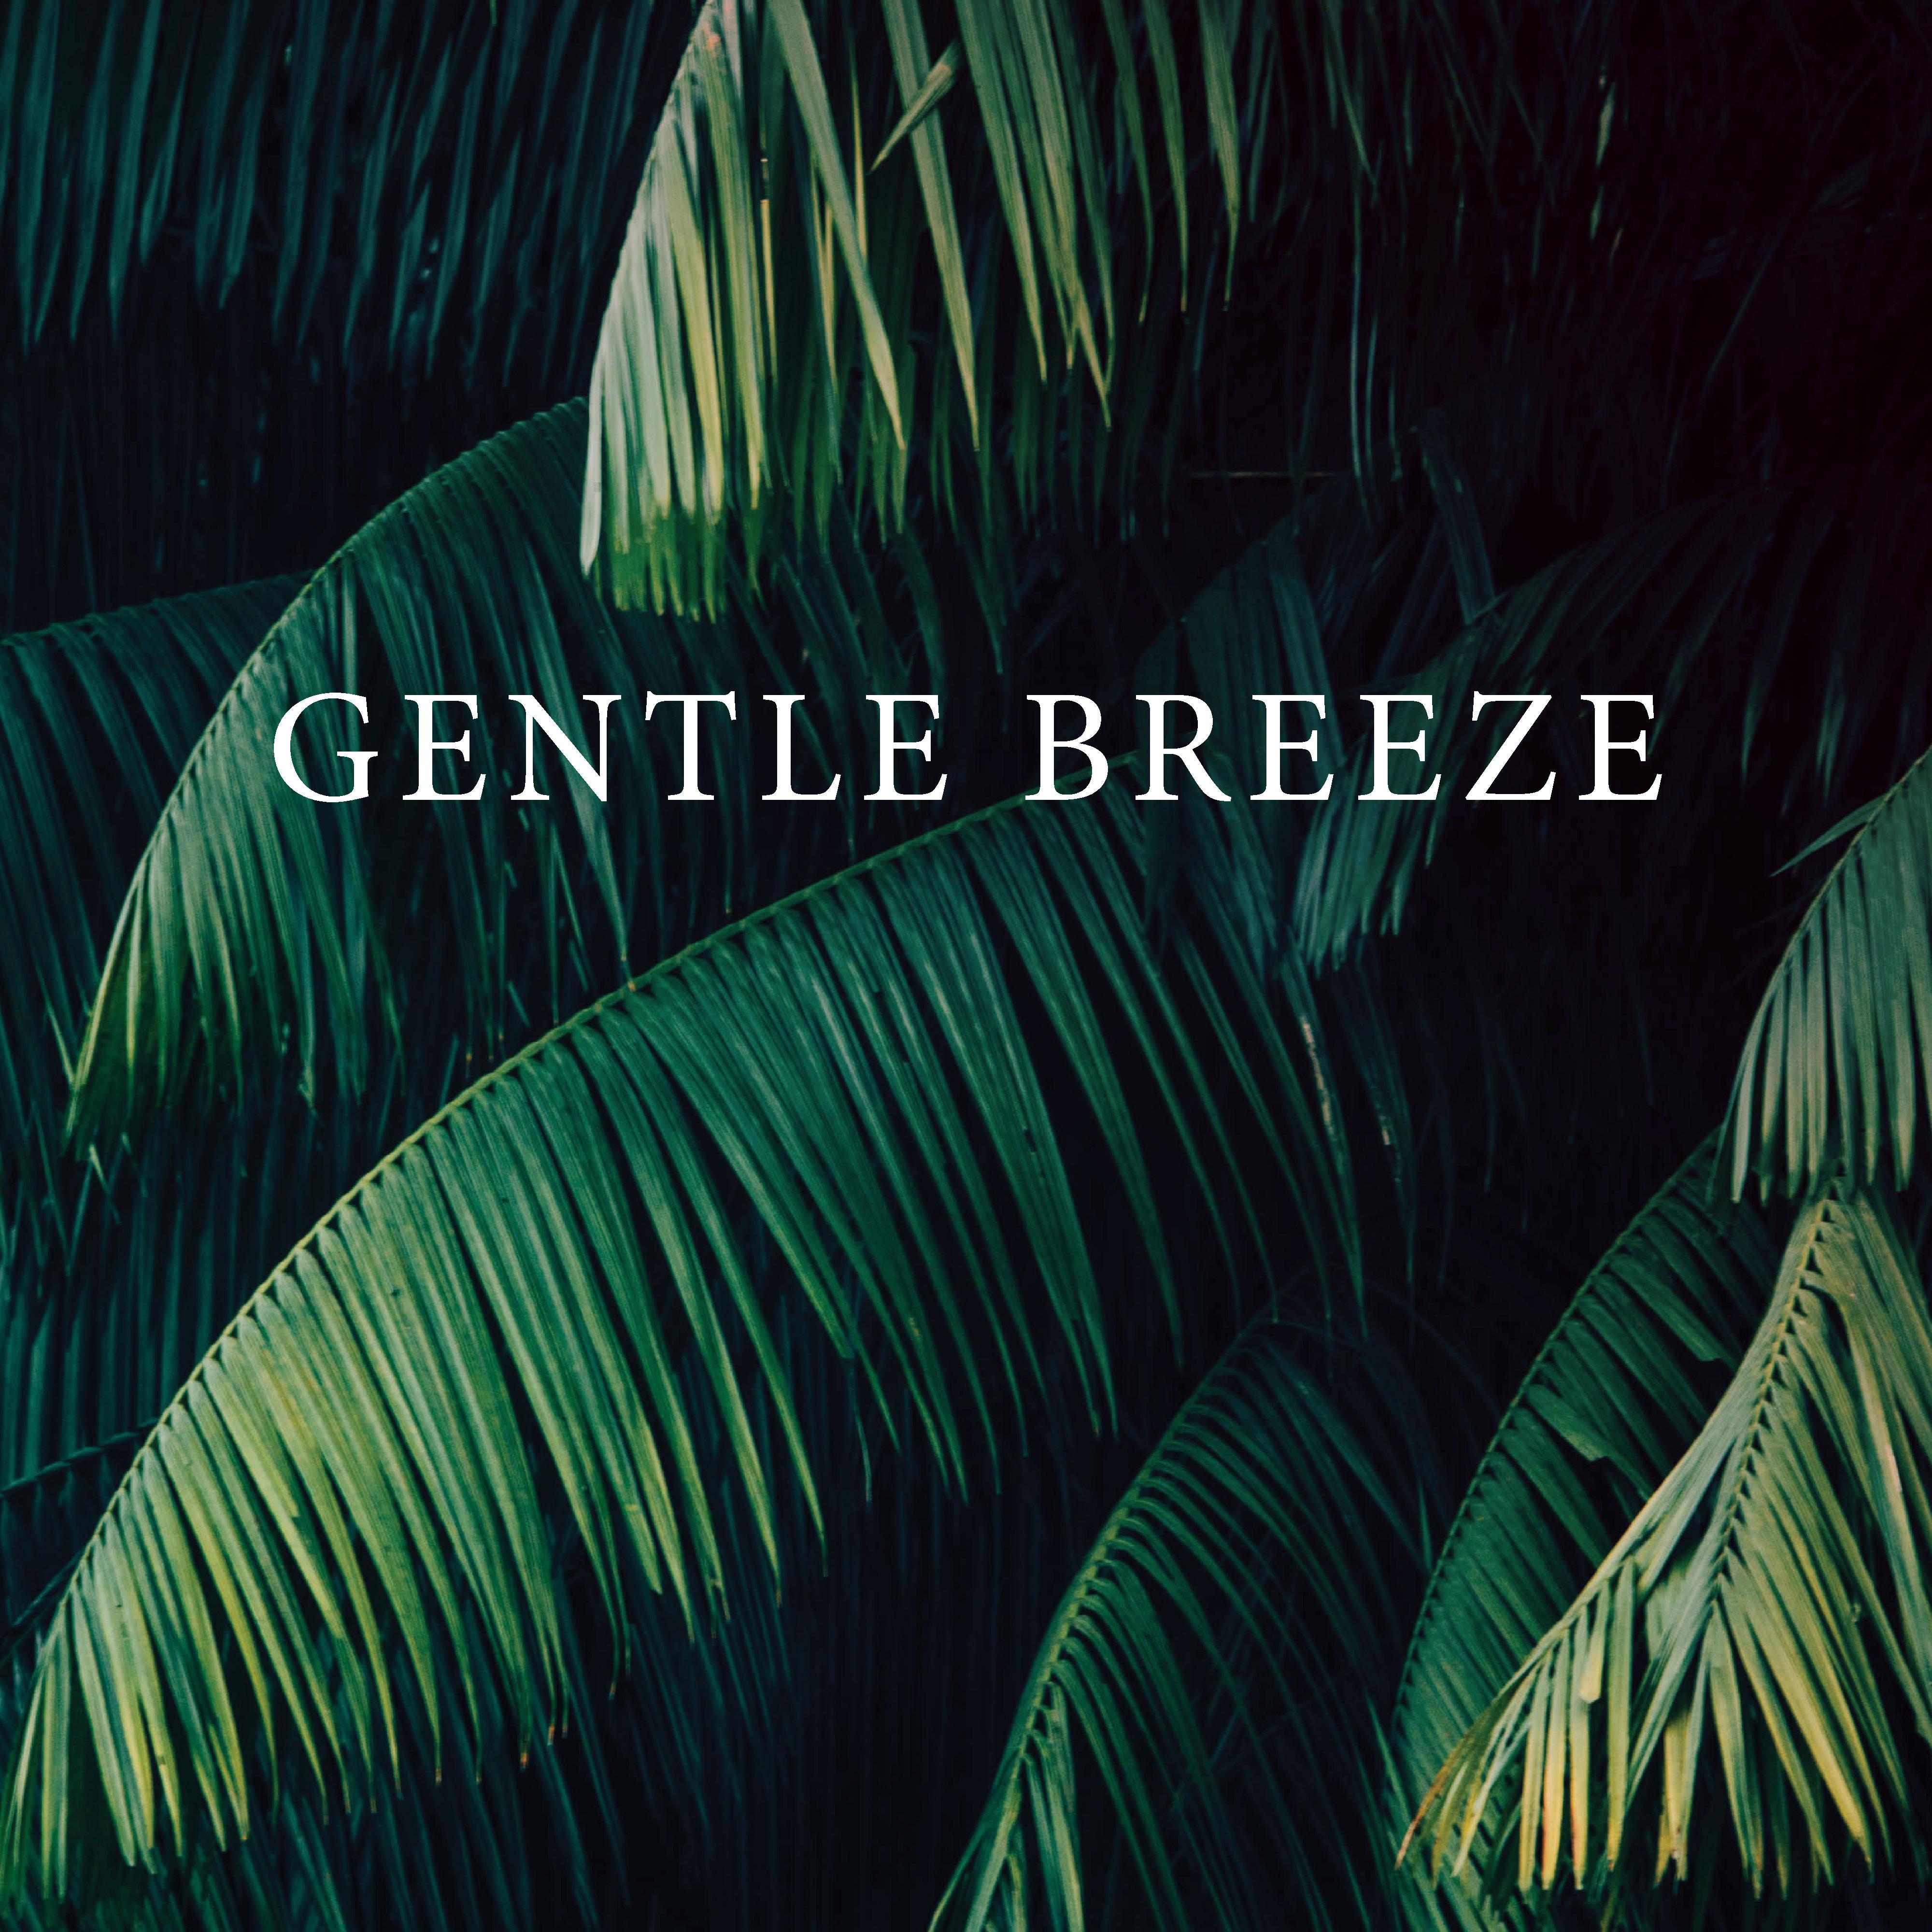 Gentle Breeze